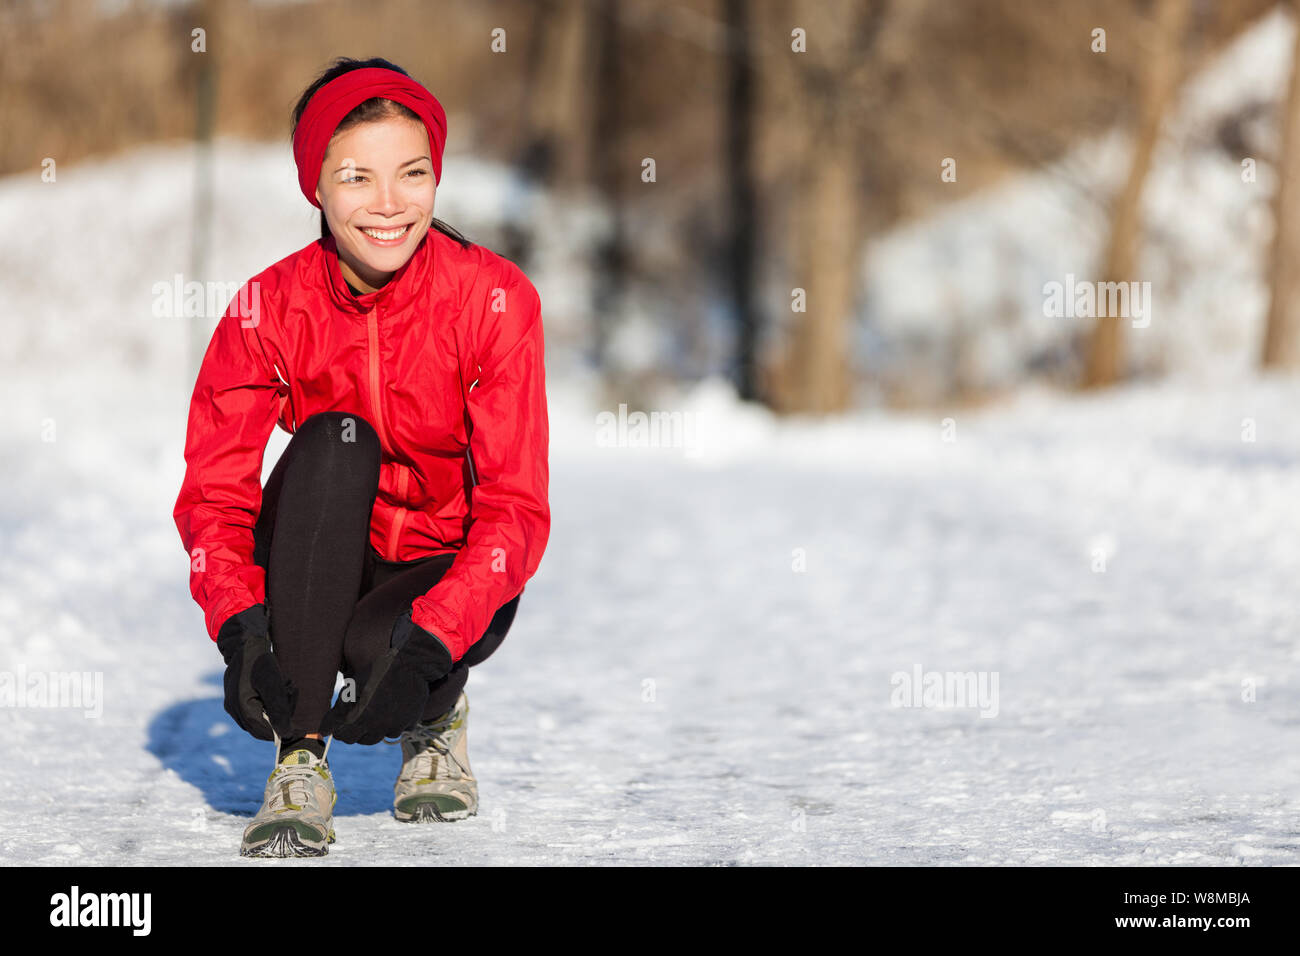 Ausführen von Athlet Frau Bereit für Outdoor laufen Laufschuhe schnüren Schnürsenkel während der Wintersaison. Außerhalb cardio Training in den kalten Schnee Wetter. Asiatische Mädchen mit Handschuhen, Stirnband und Jacke. Stockfoto